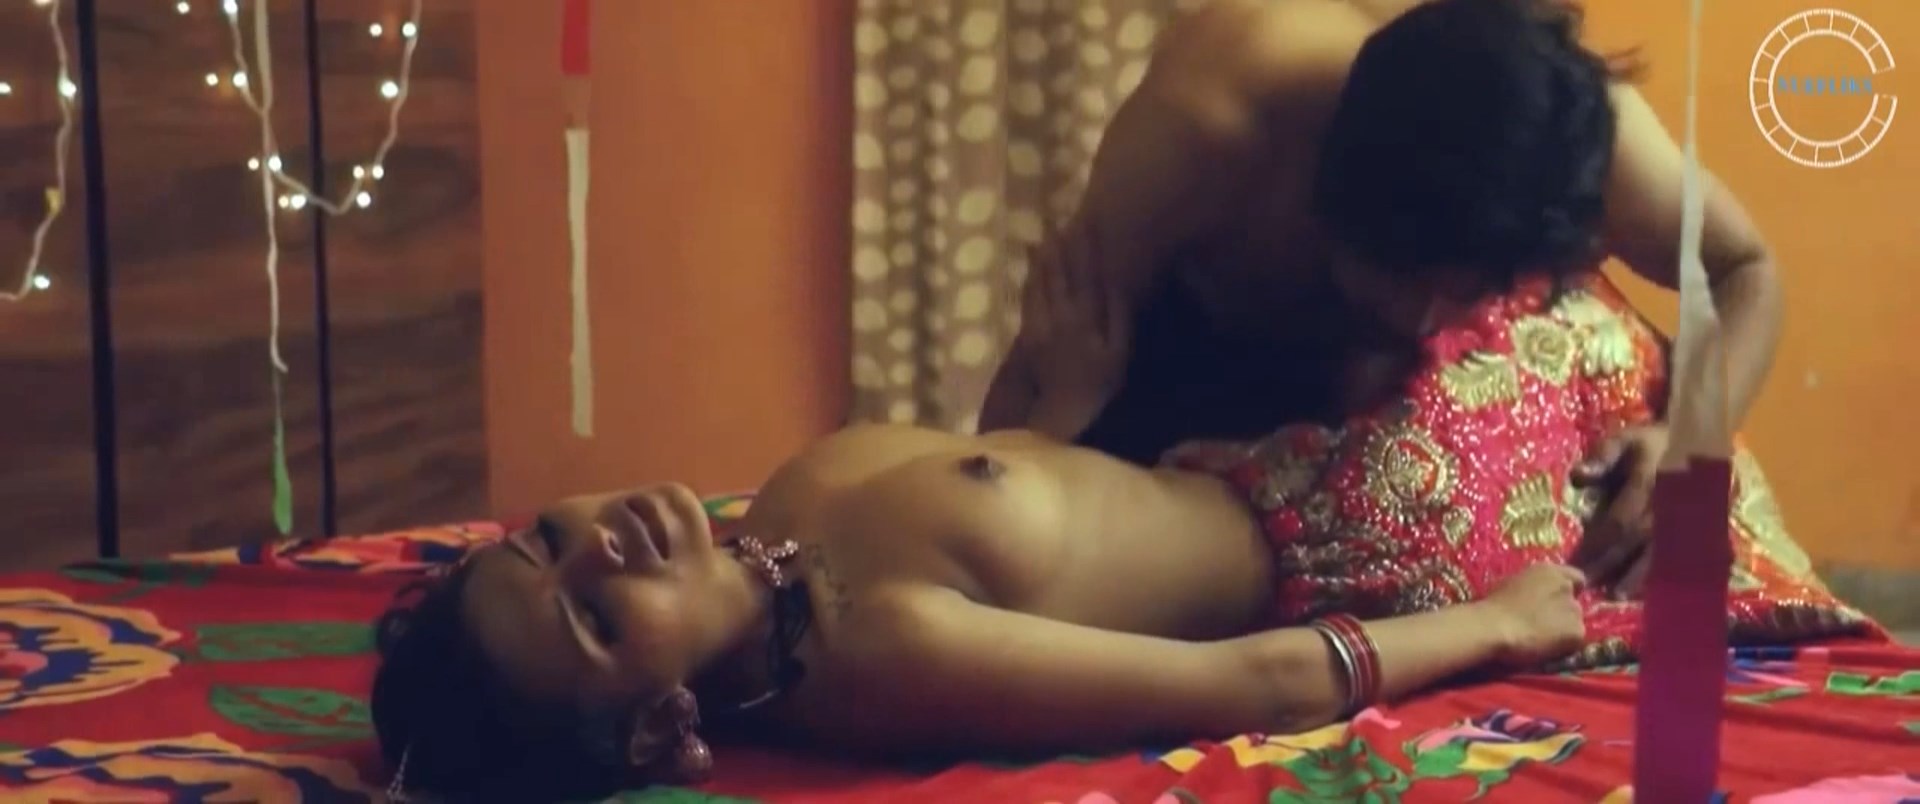 Nude Video Celebs Arohi Barde Nude Adhuri Suhaag Raat 2020